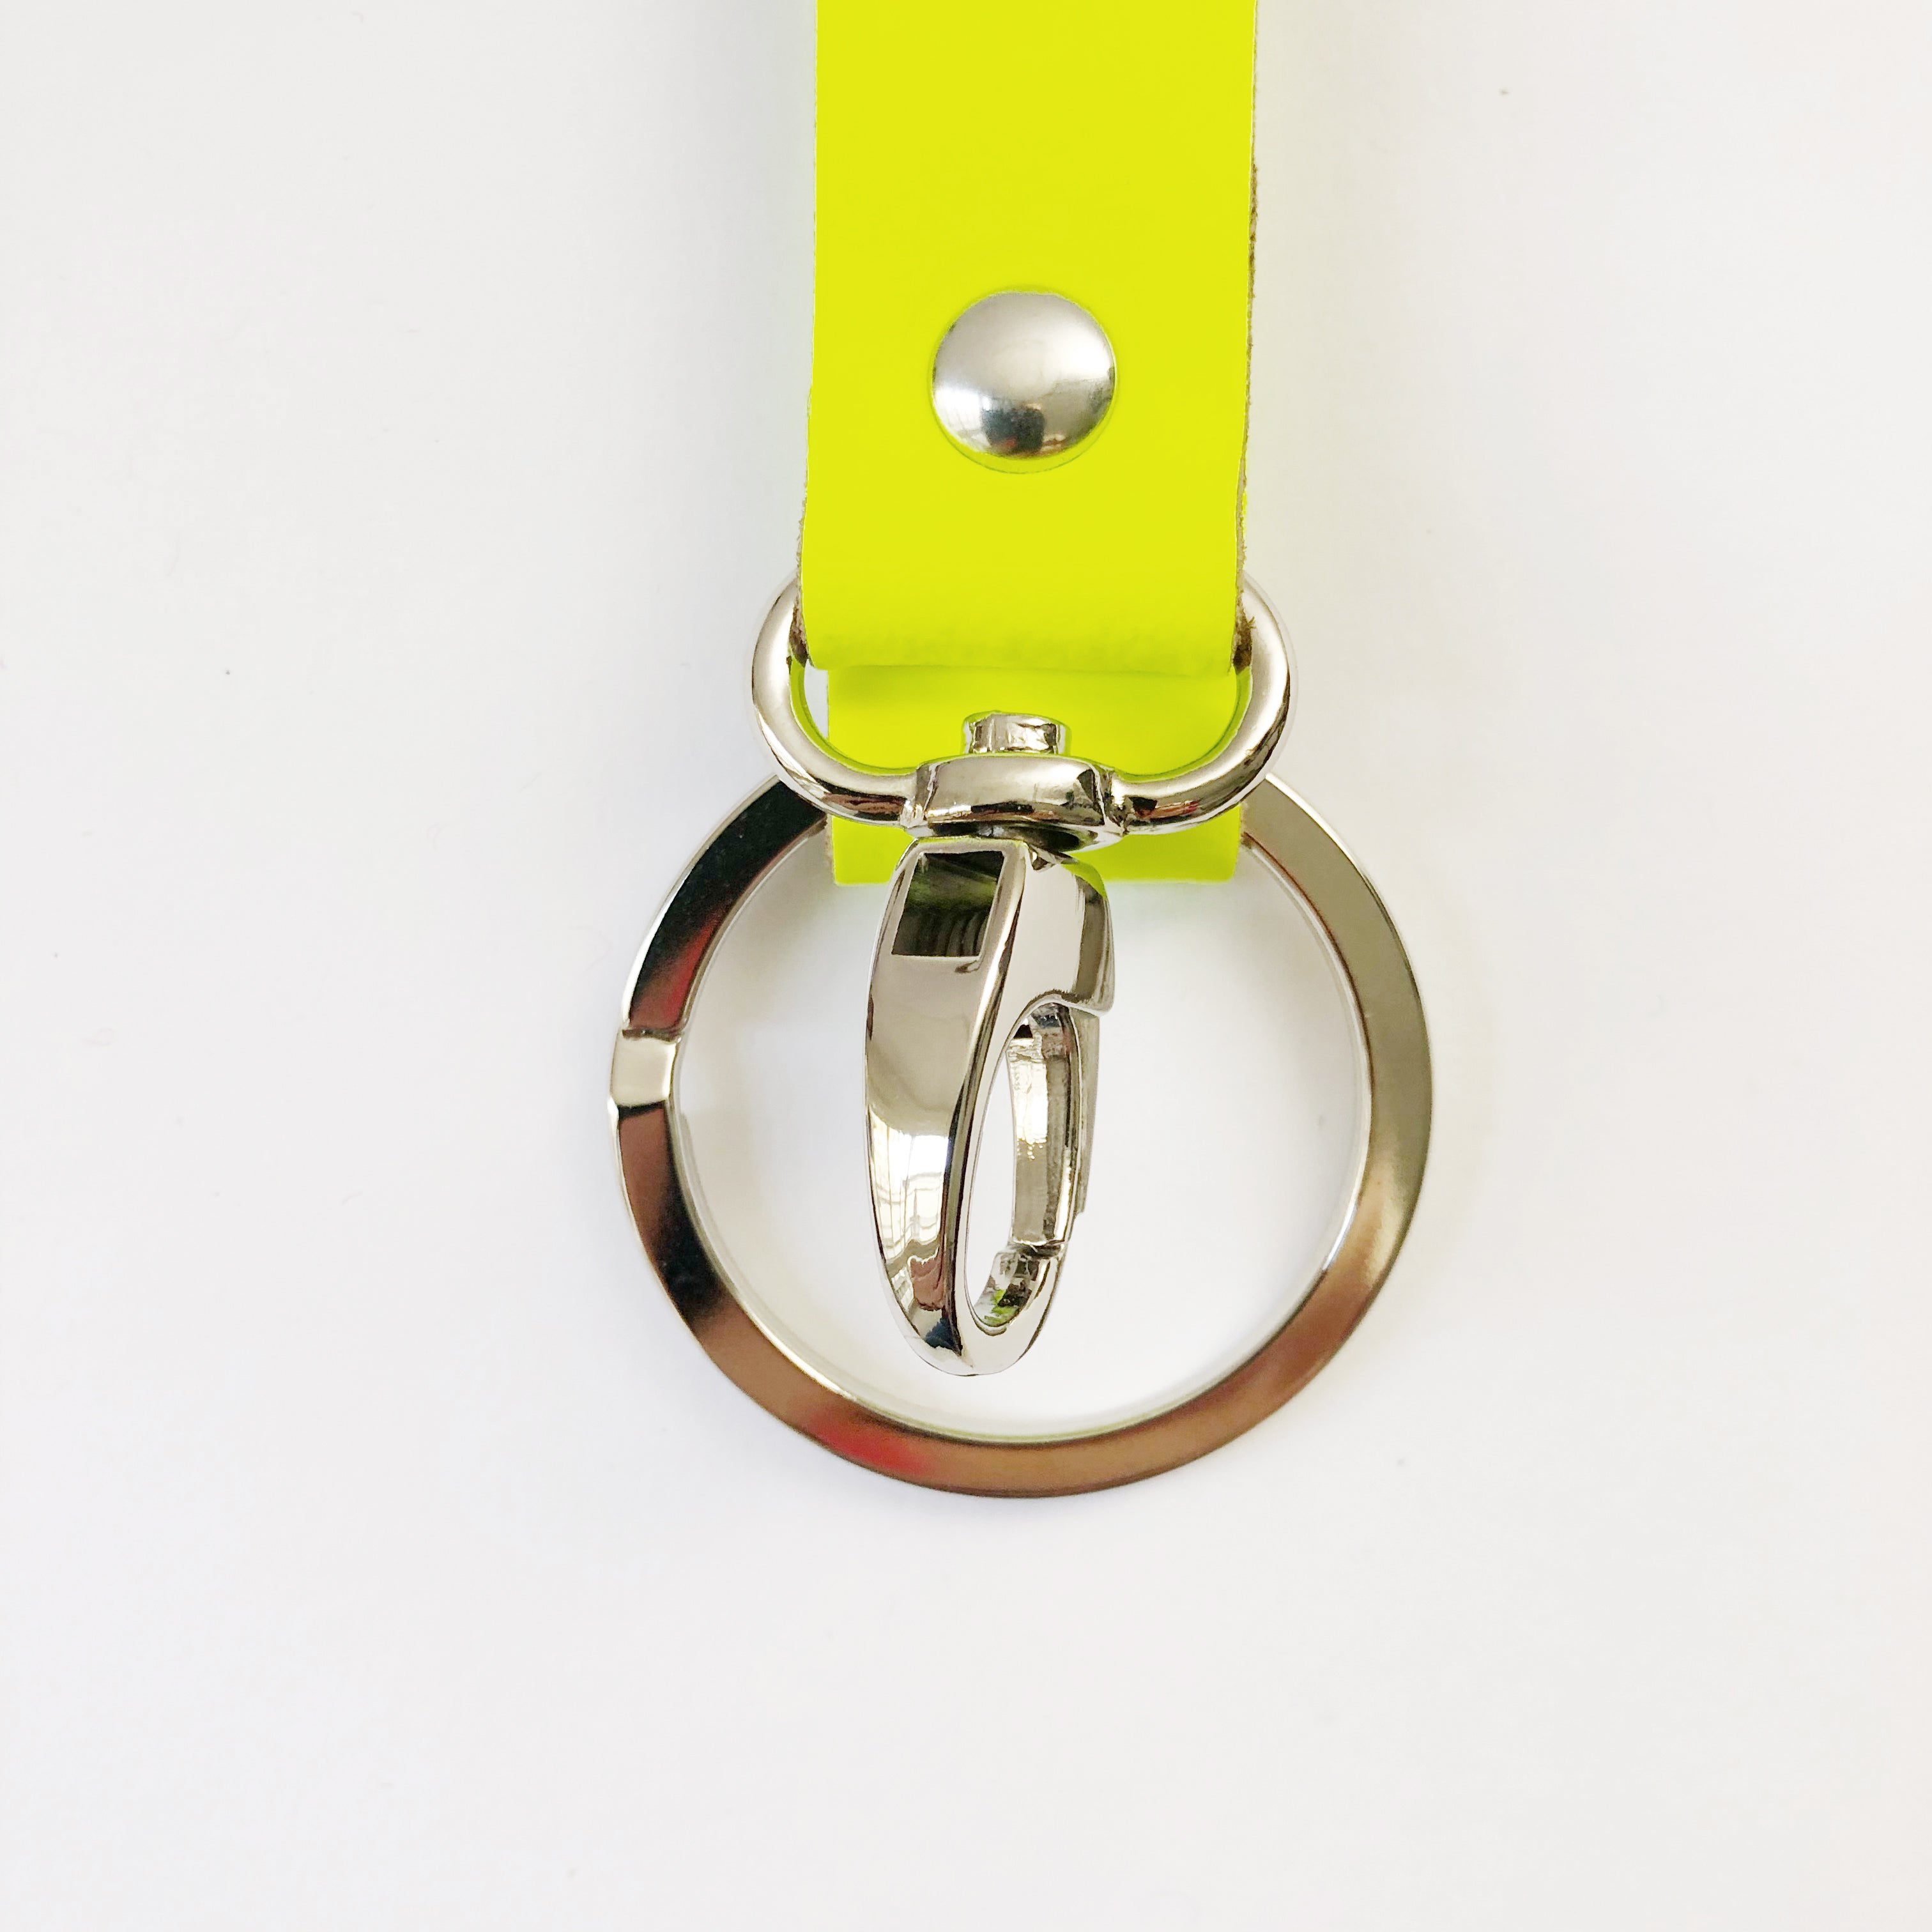 Neon Schlüsselanhänger Leder in Neon-Orange. 1 x Sofort lieferbar